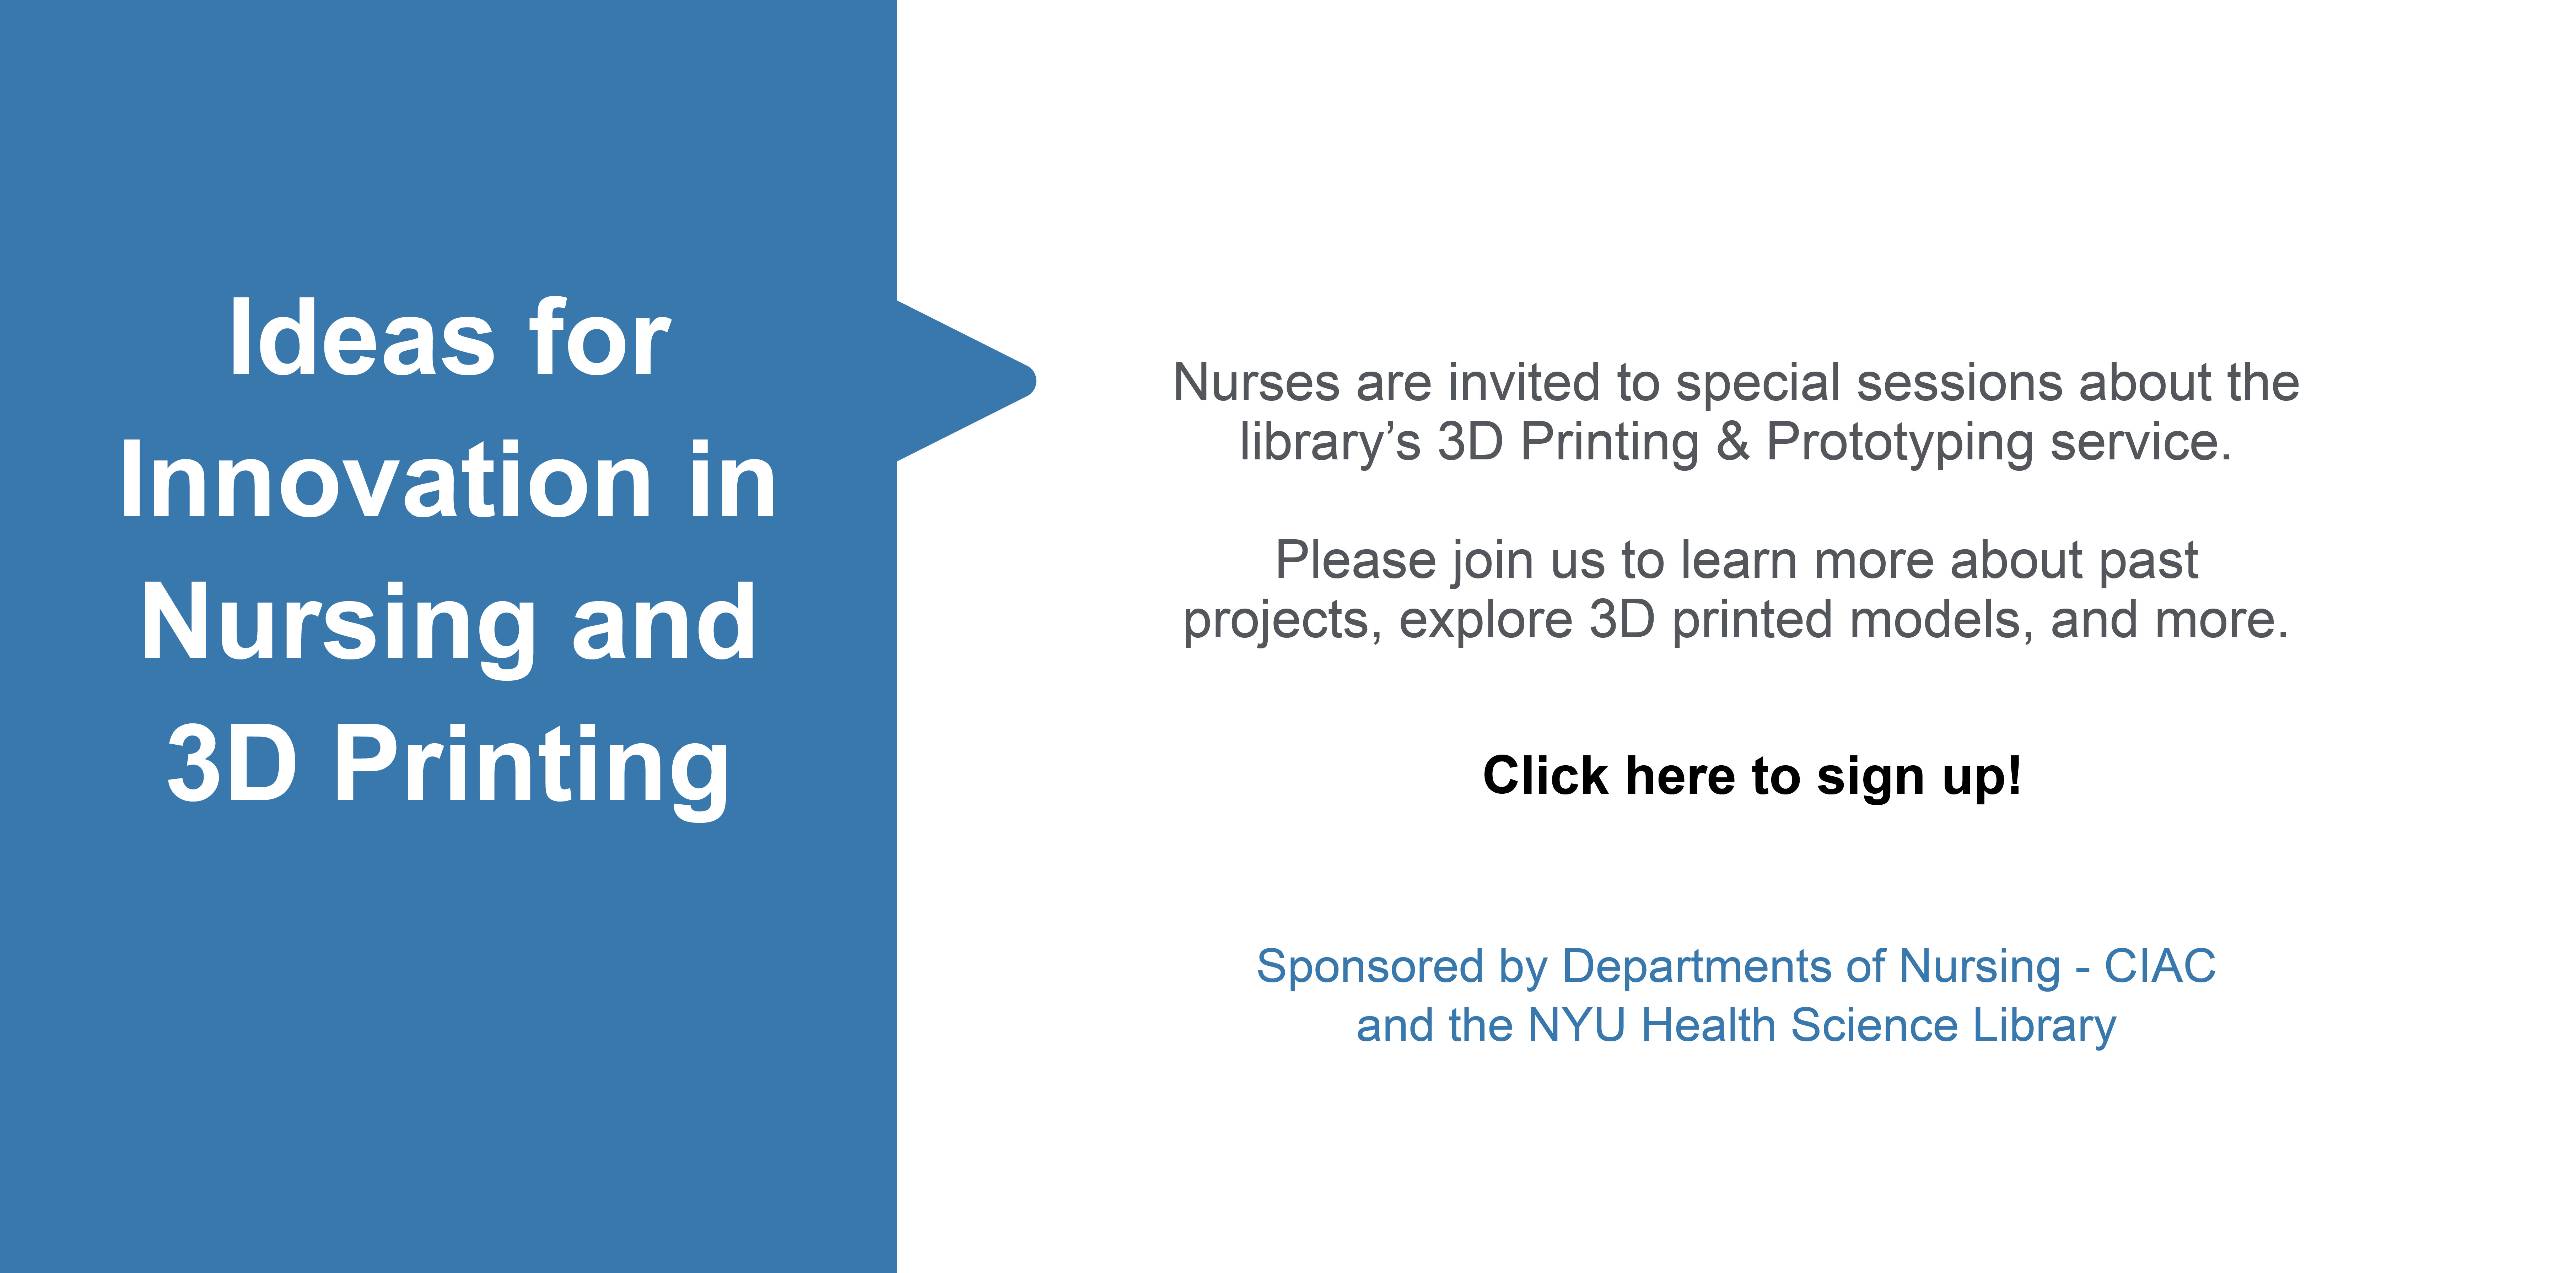 3D Printing workshops for Nurses